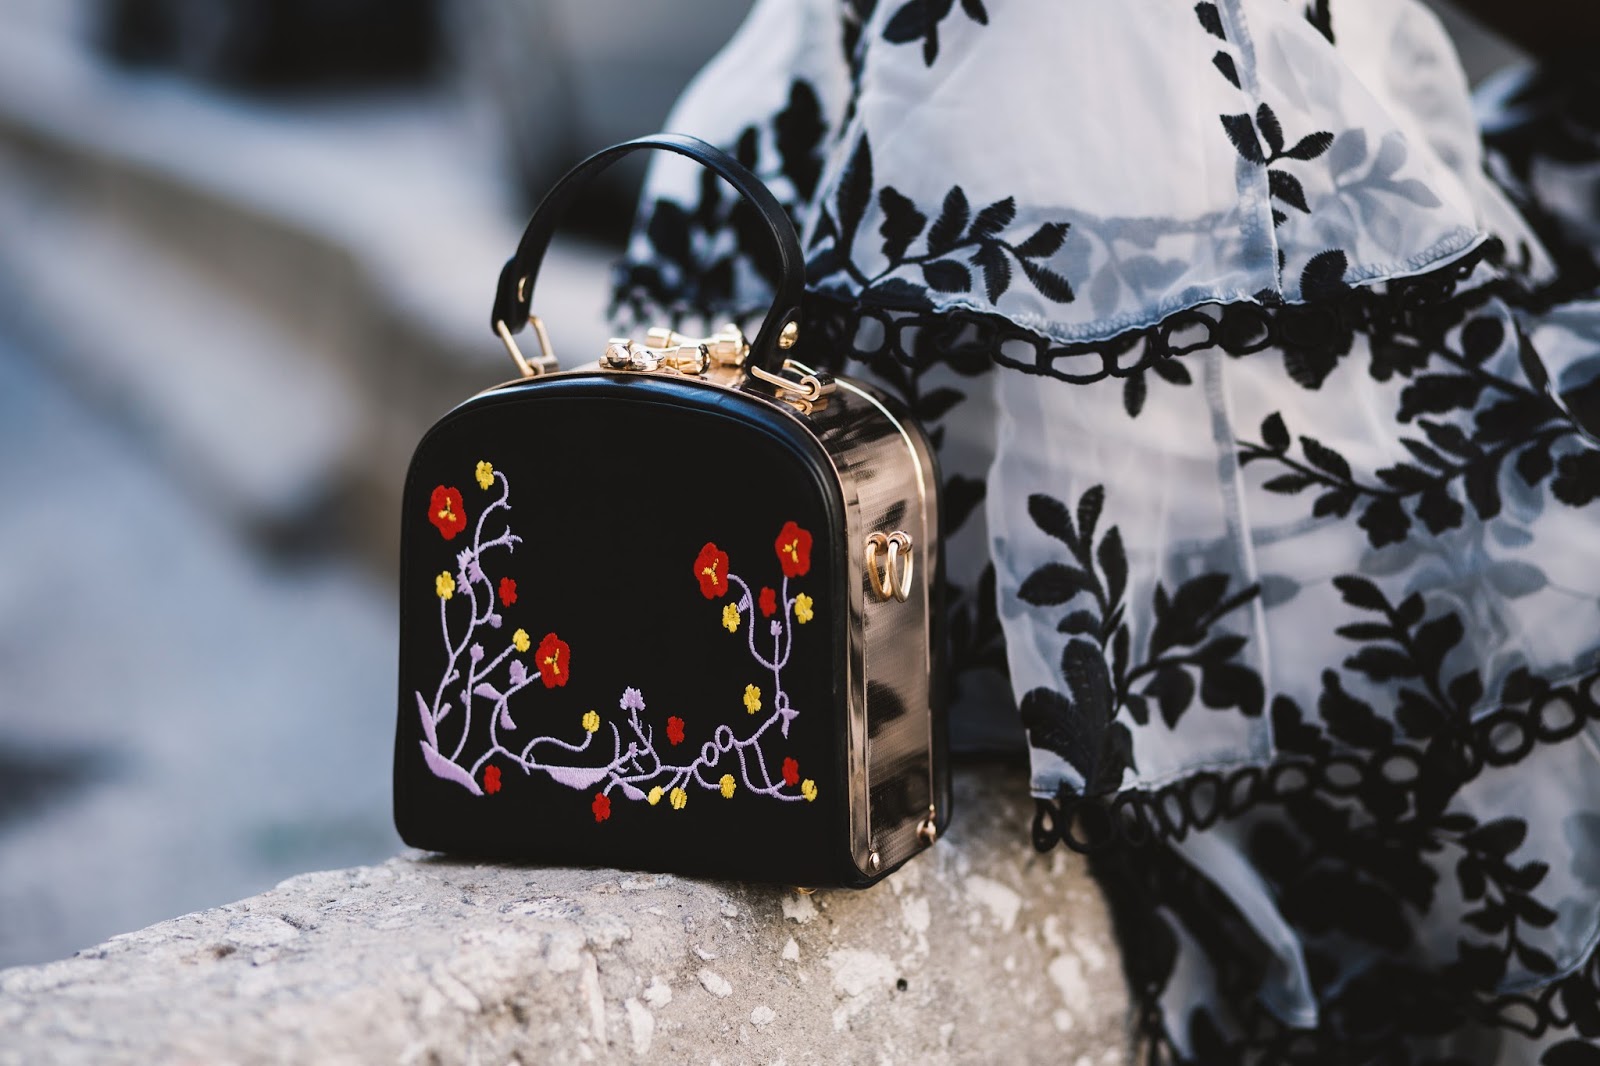 Metal Trimmed Floral Embroidered Handbag